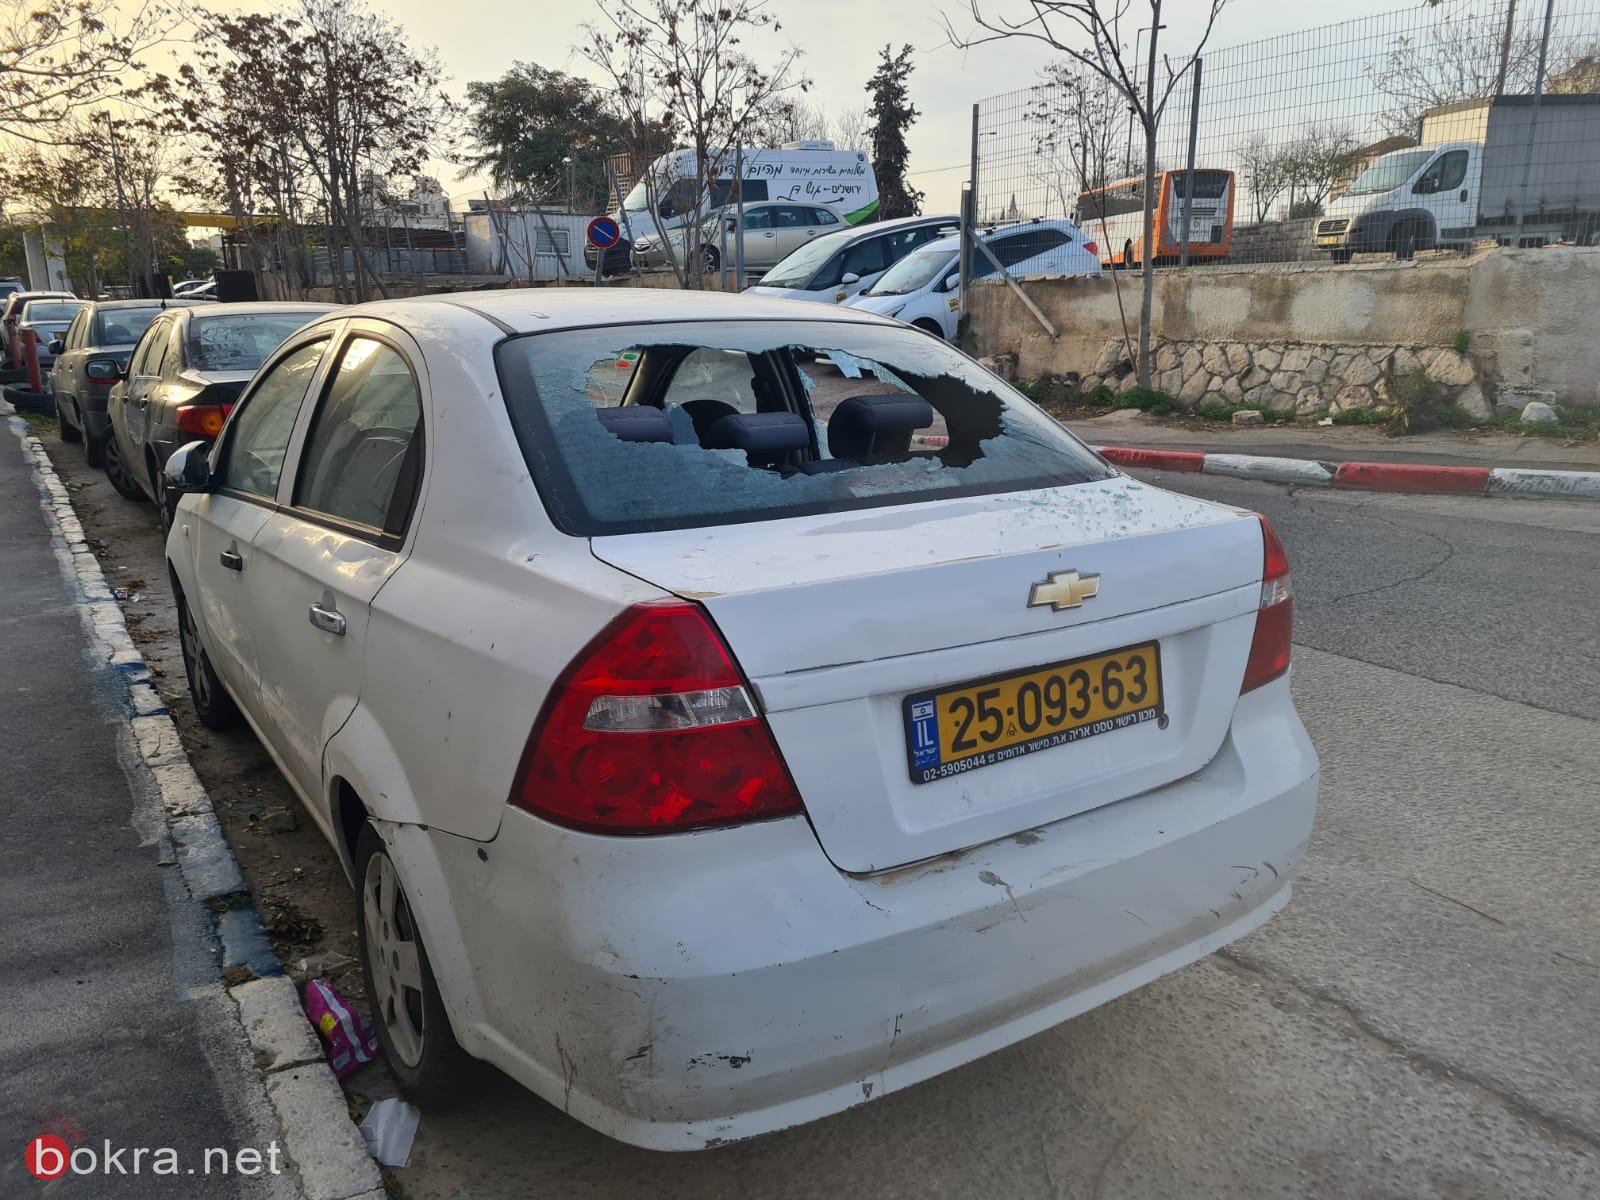 القدس: مستوطنون يعتدون على مركبات المقدسيين .. "عصابات تعمل تحت أعين الشرطة!"-5